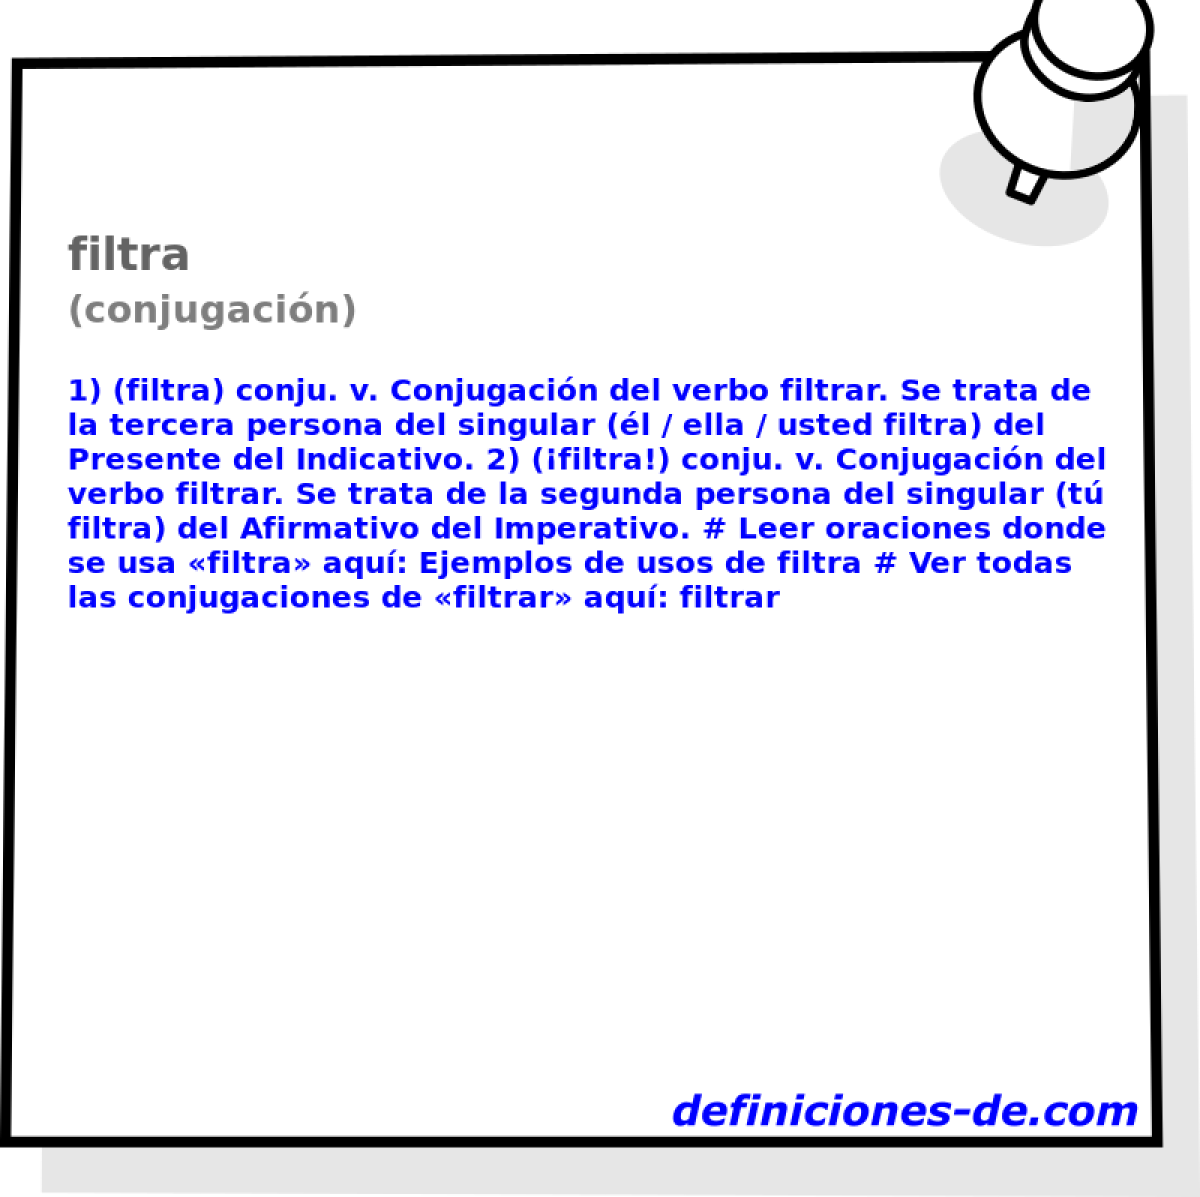 filtra (conjugacin)